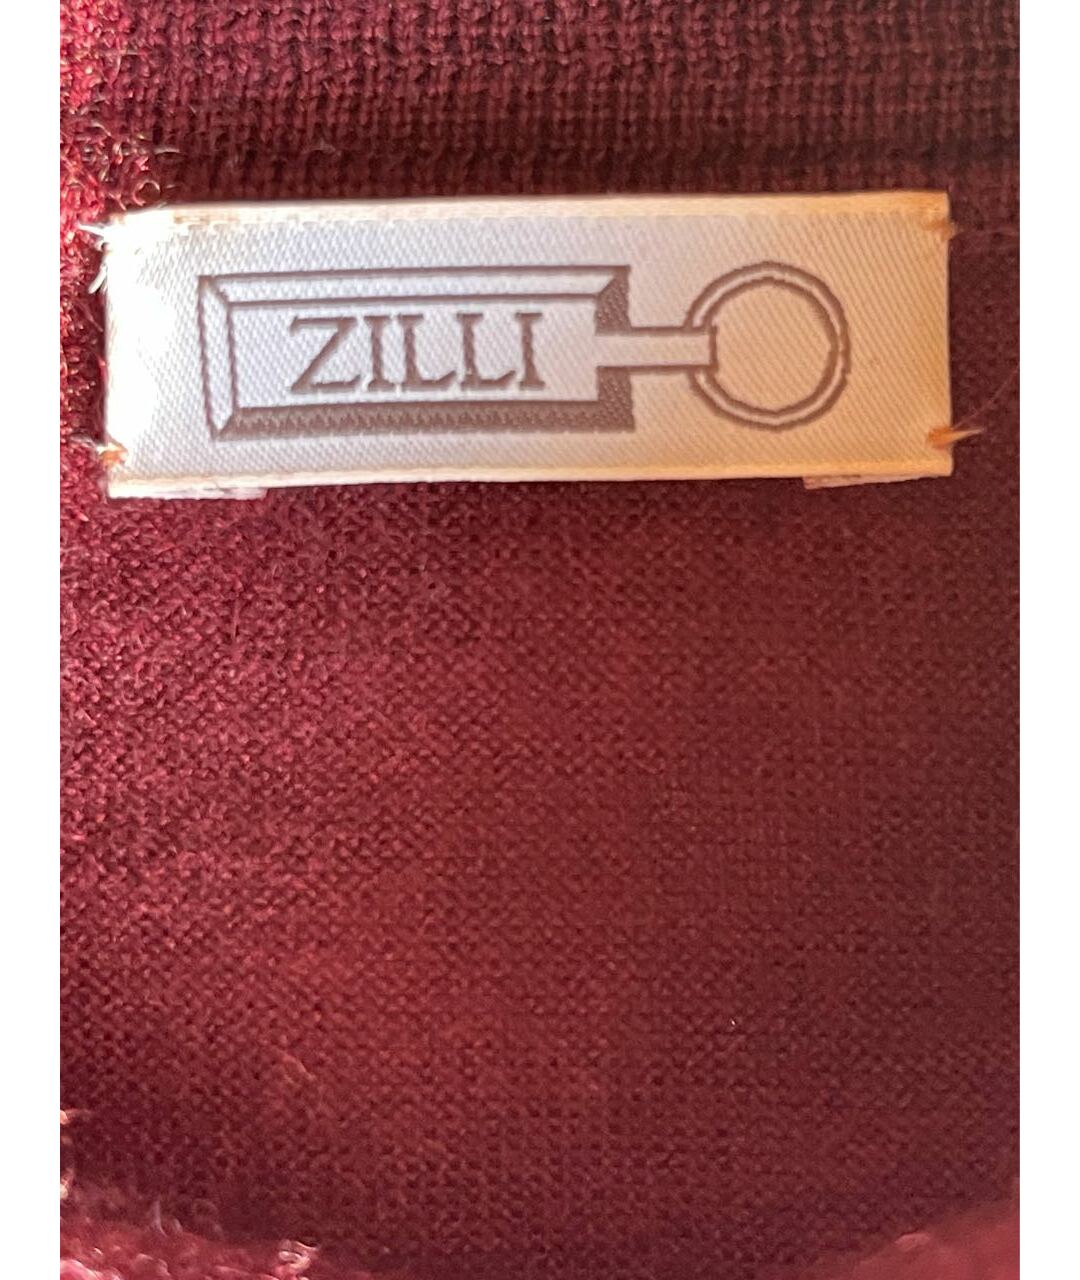 ZILLI Бордовый кашемировый джемпер / свитер, фото 6